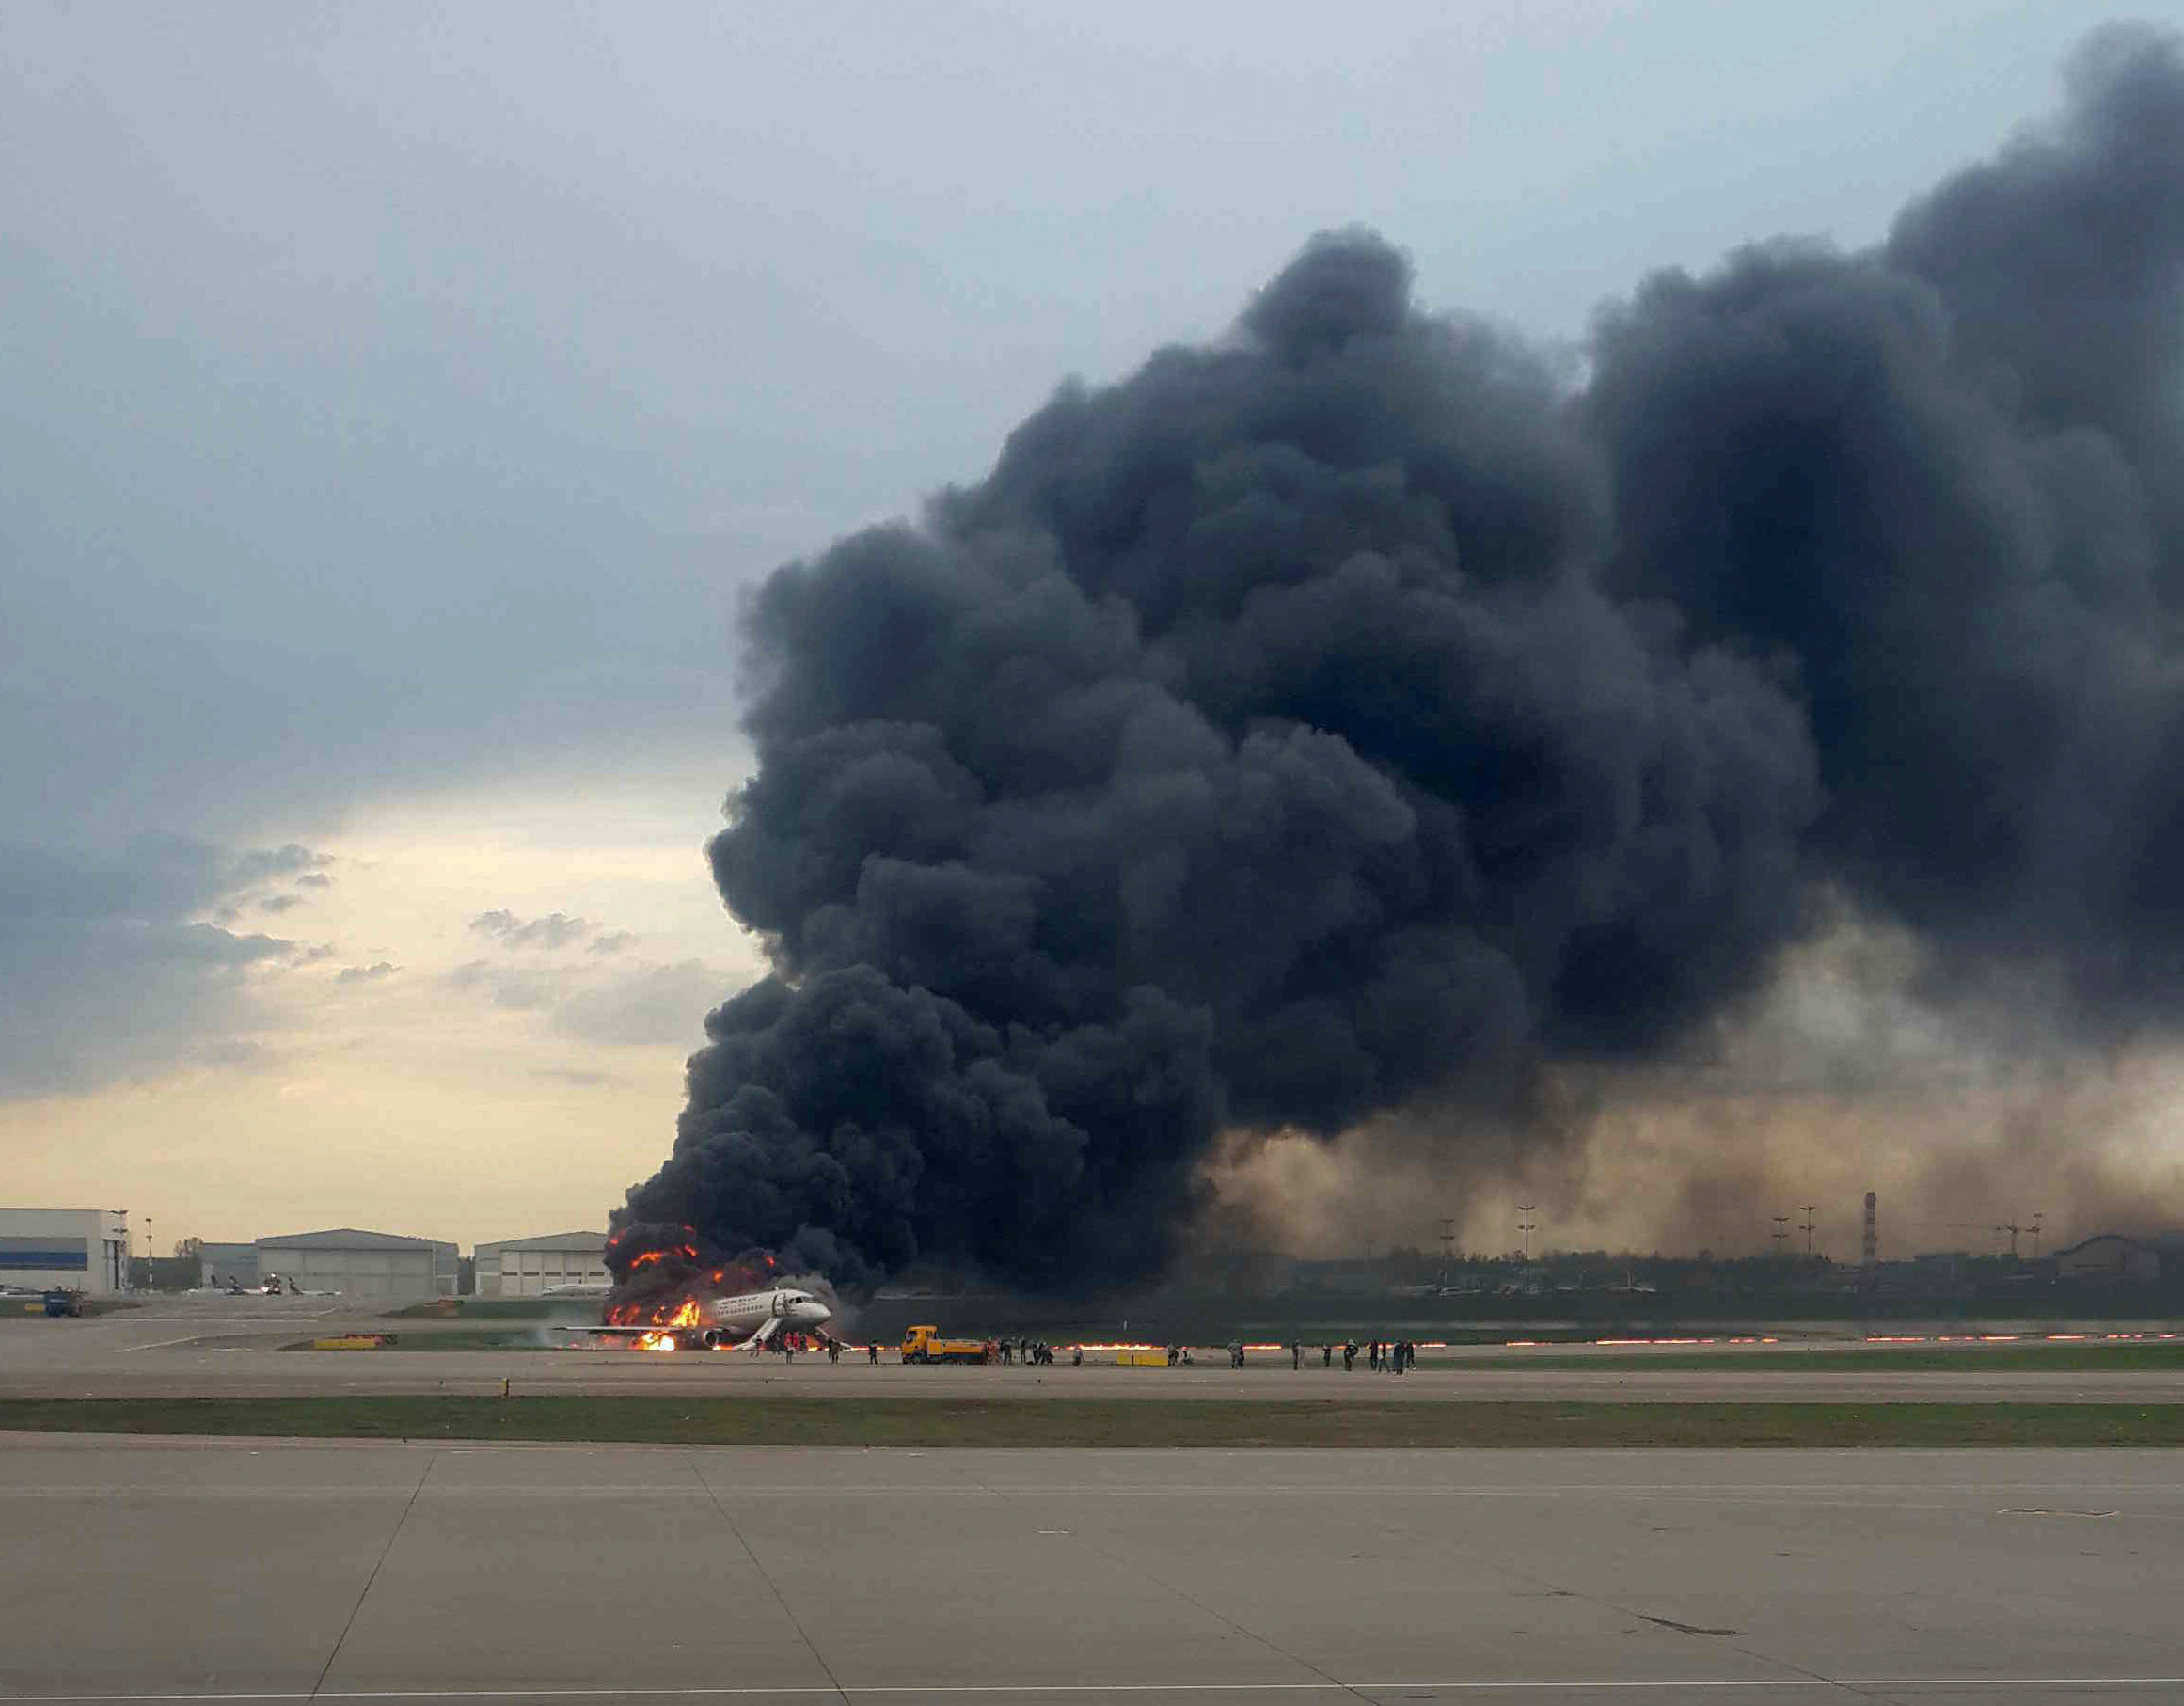 Gritos y llamas: El ESCALOFRIANTE video desde el interior del avión incendiado en Moscú